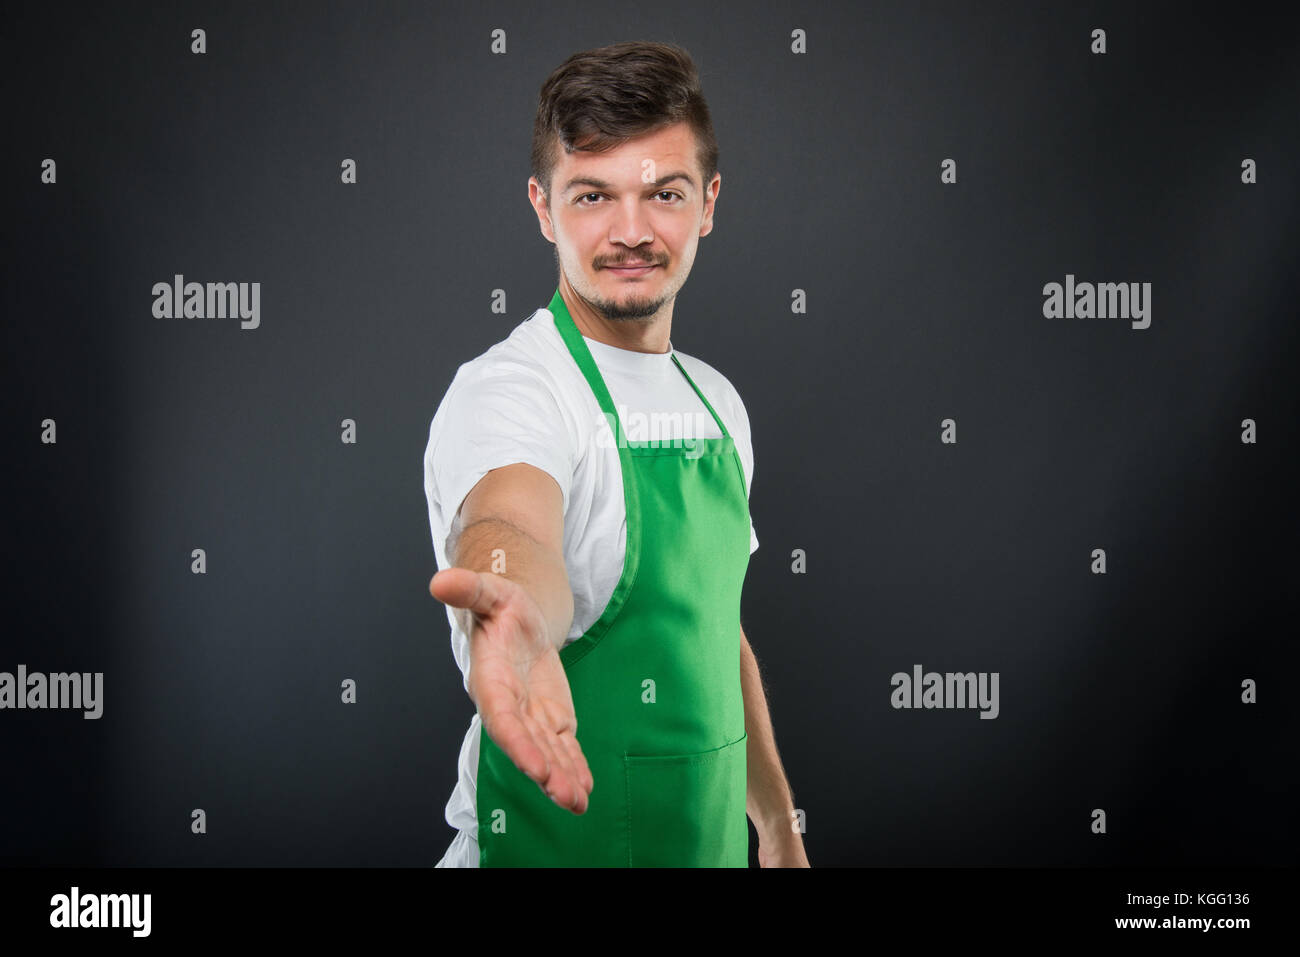 Ritratto di supermercato attraente datore di lavoro offrendo il tremolio delle mani come chiusura trattativa su sfondo nero Foto Stock